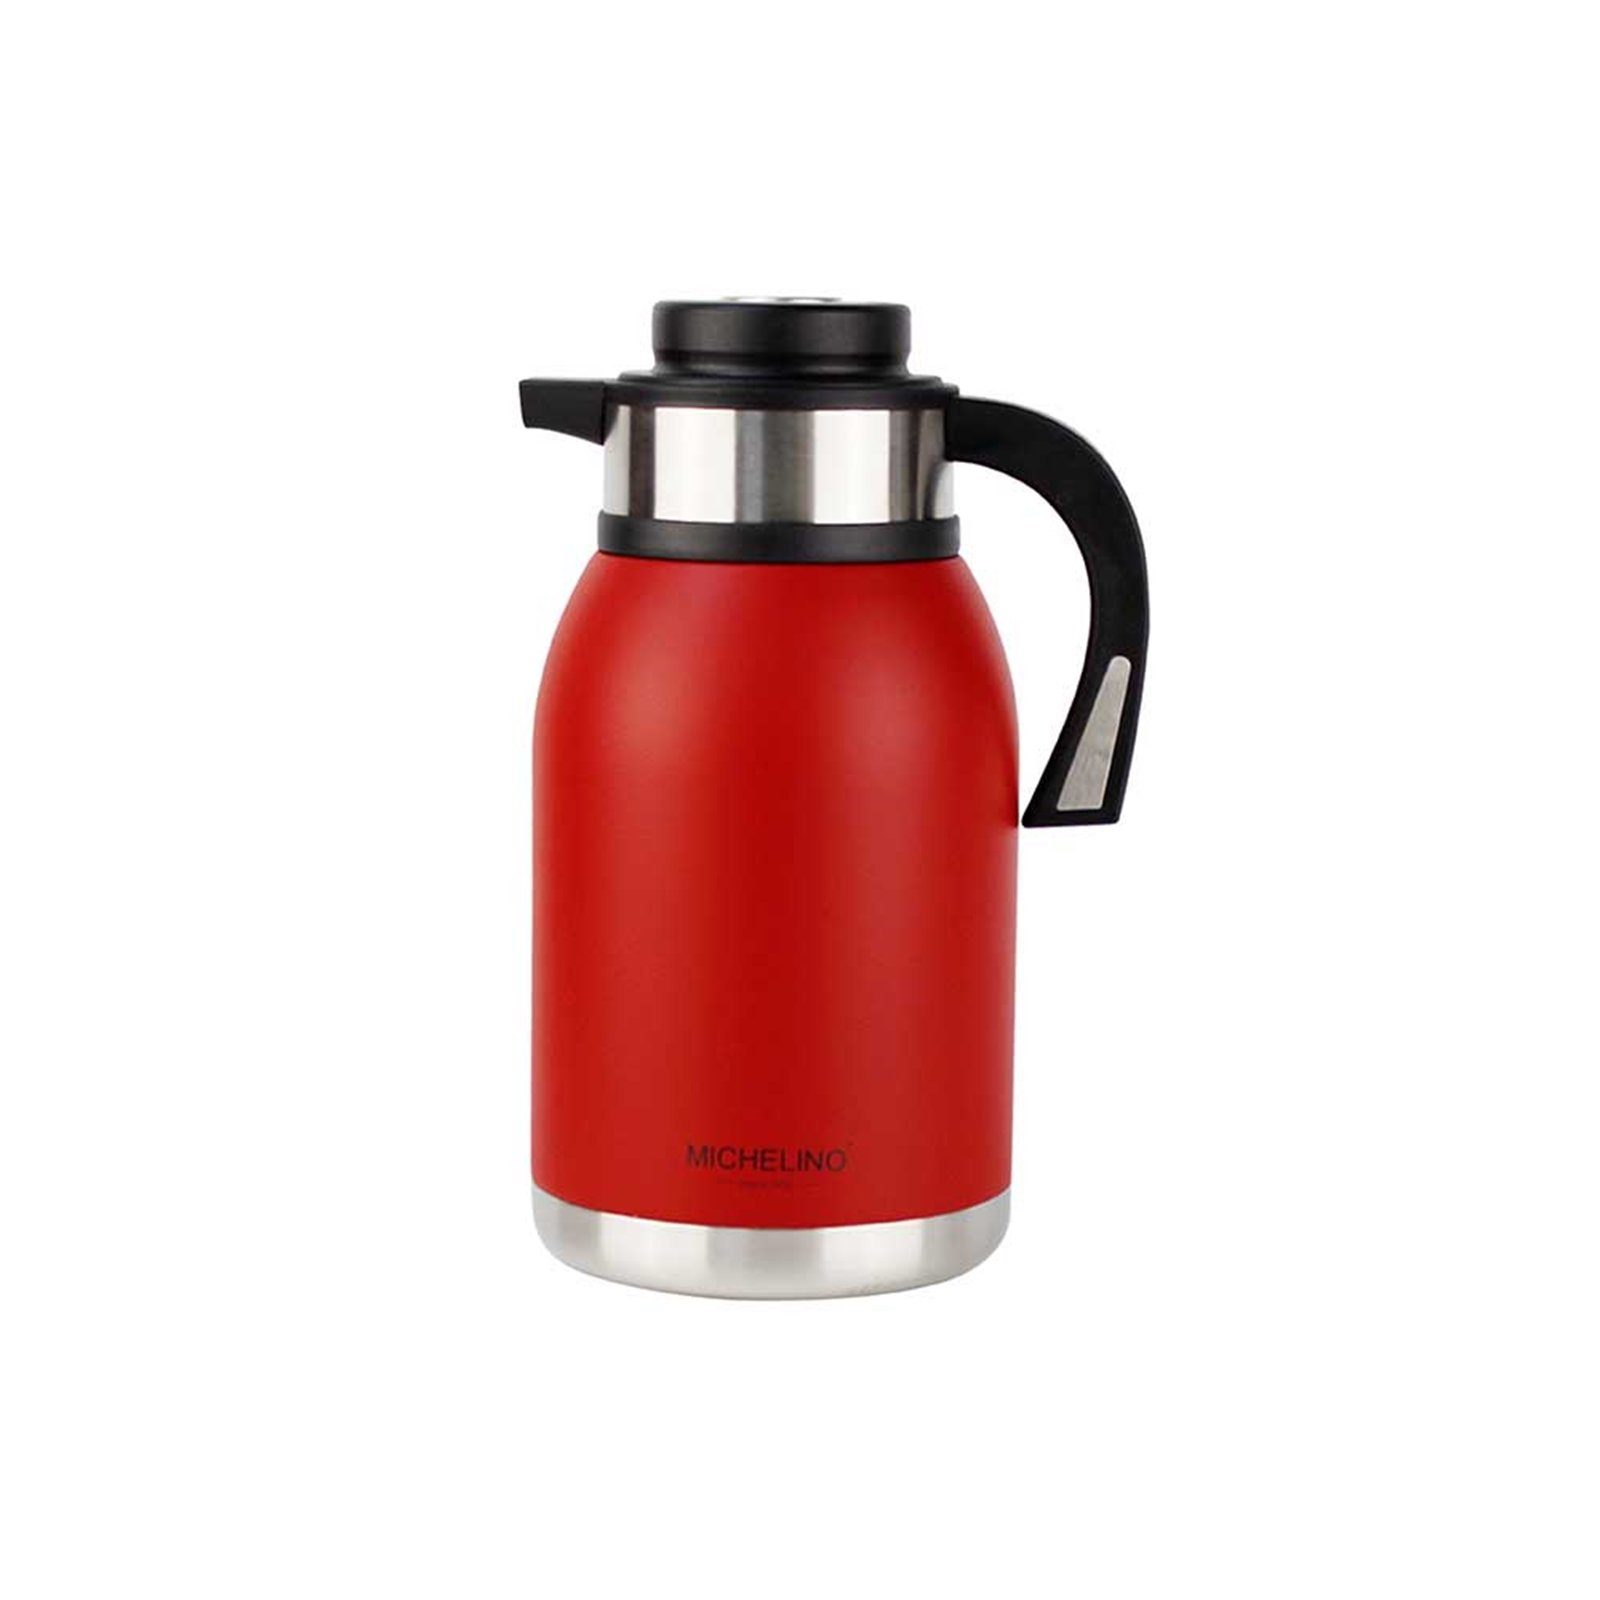 Michelino Isolierkanne Isolierkanne 2 Liter Kaffeekanne 2 (Stück), l, Rot Edelstahl, Teekanne